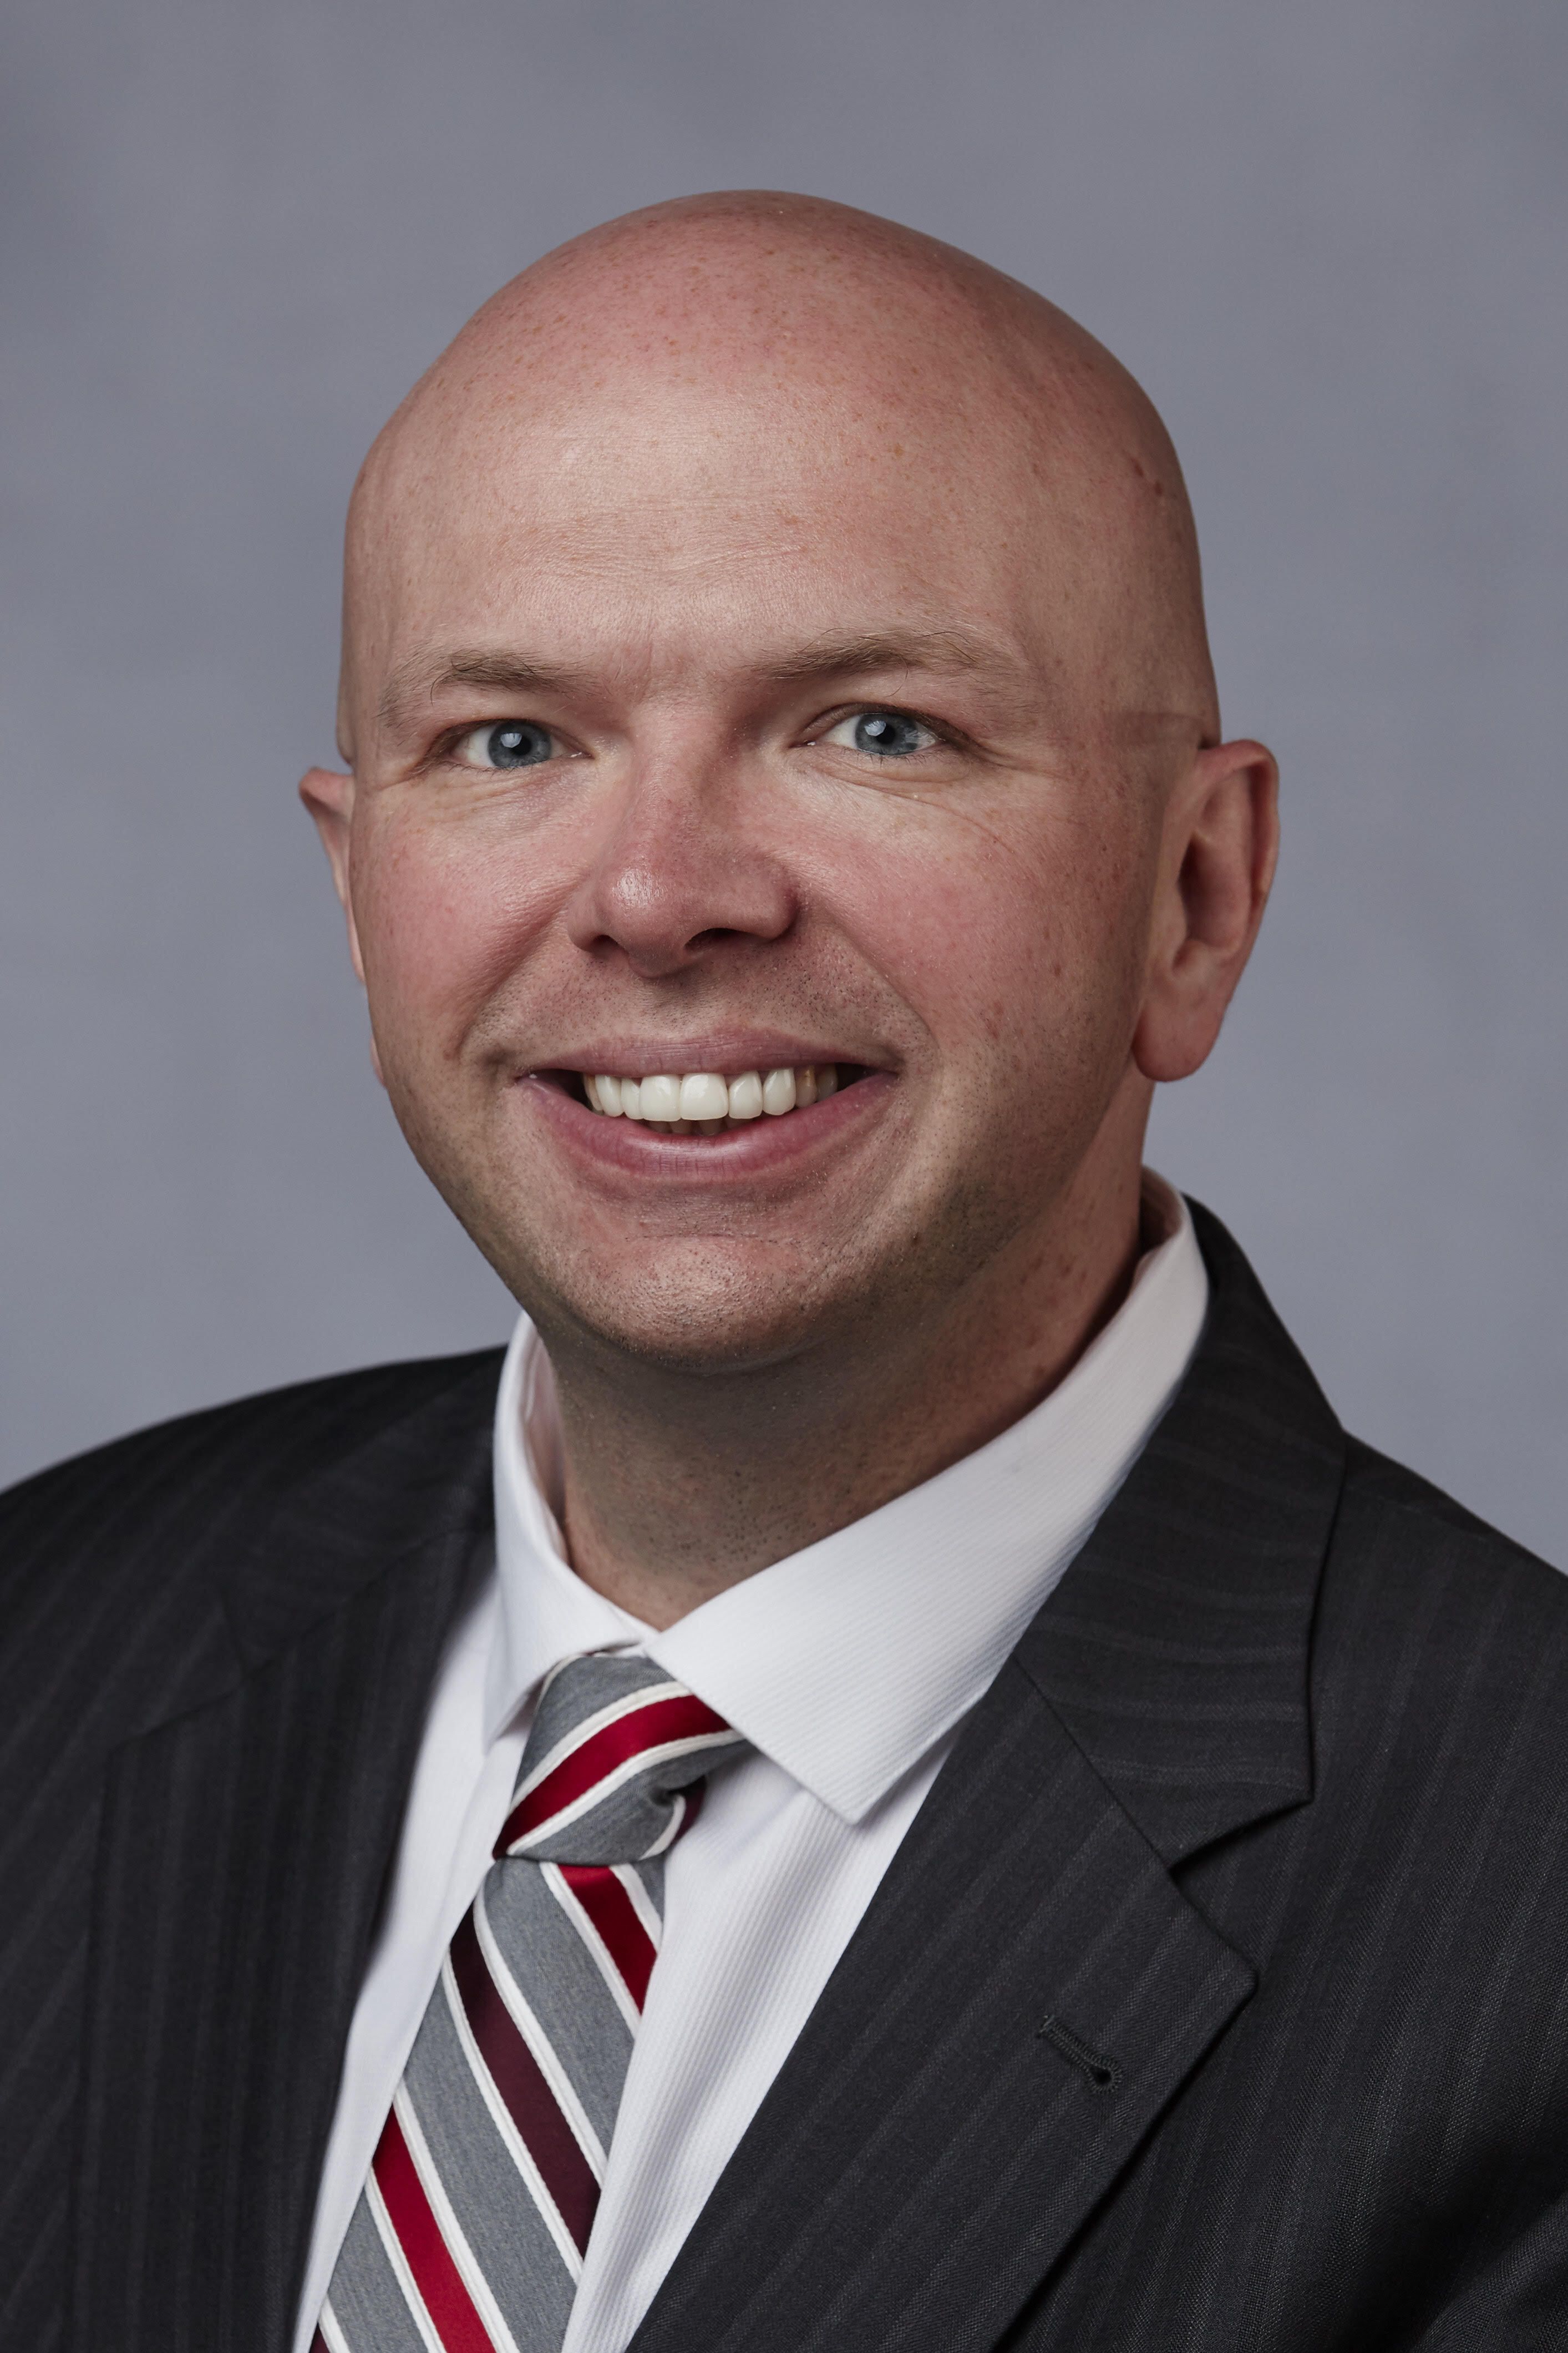 Dr. Chad Warren, President